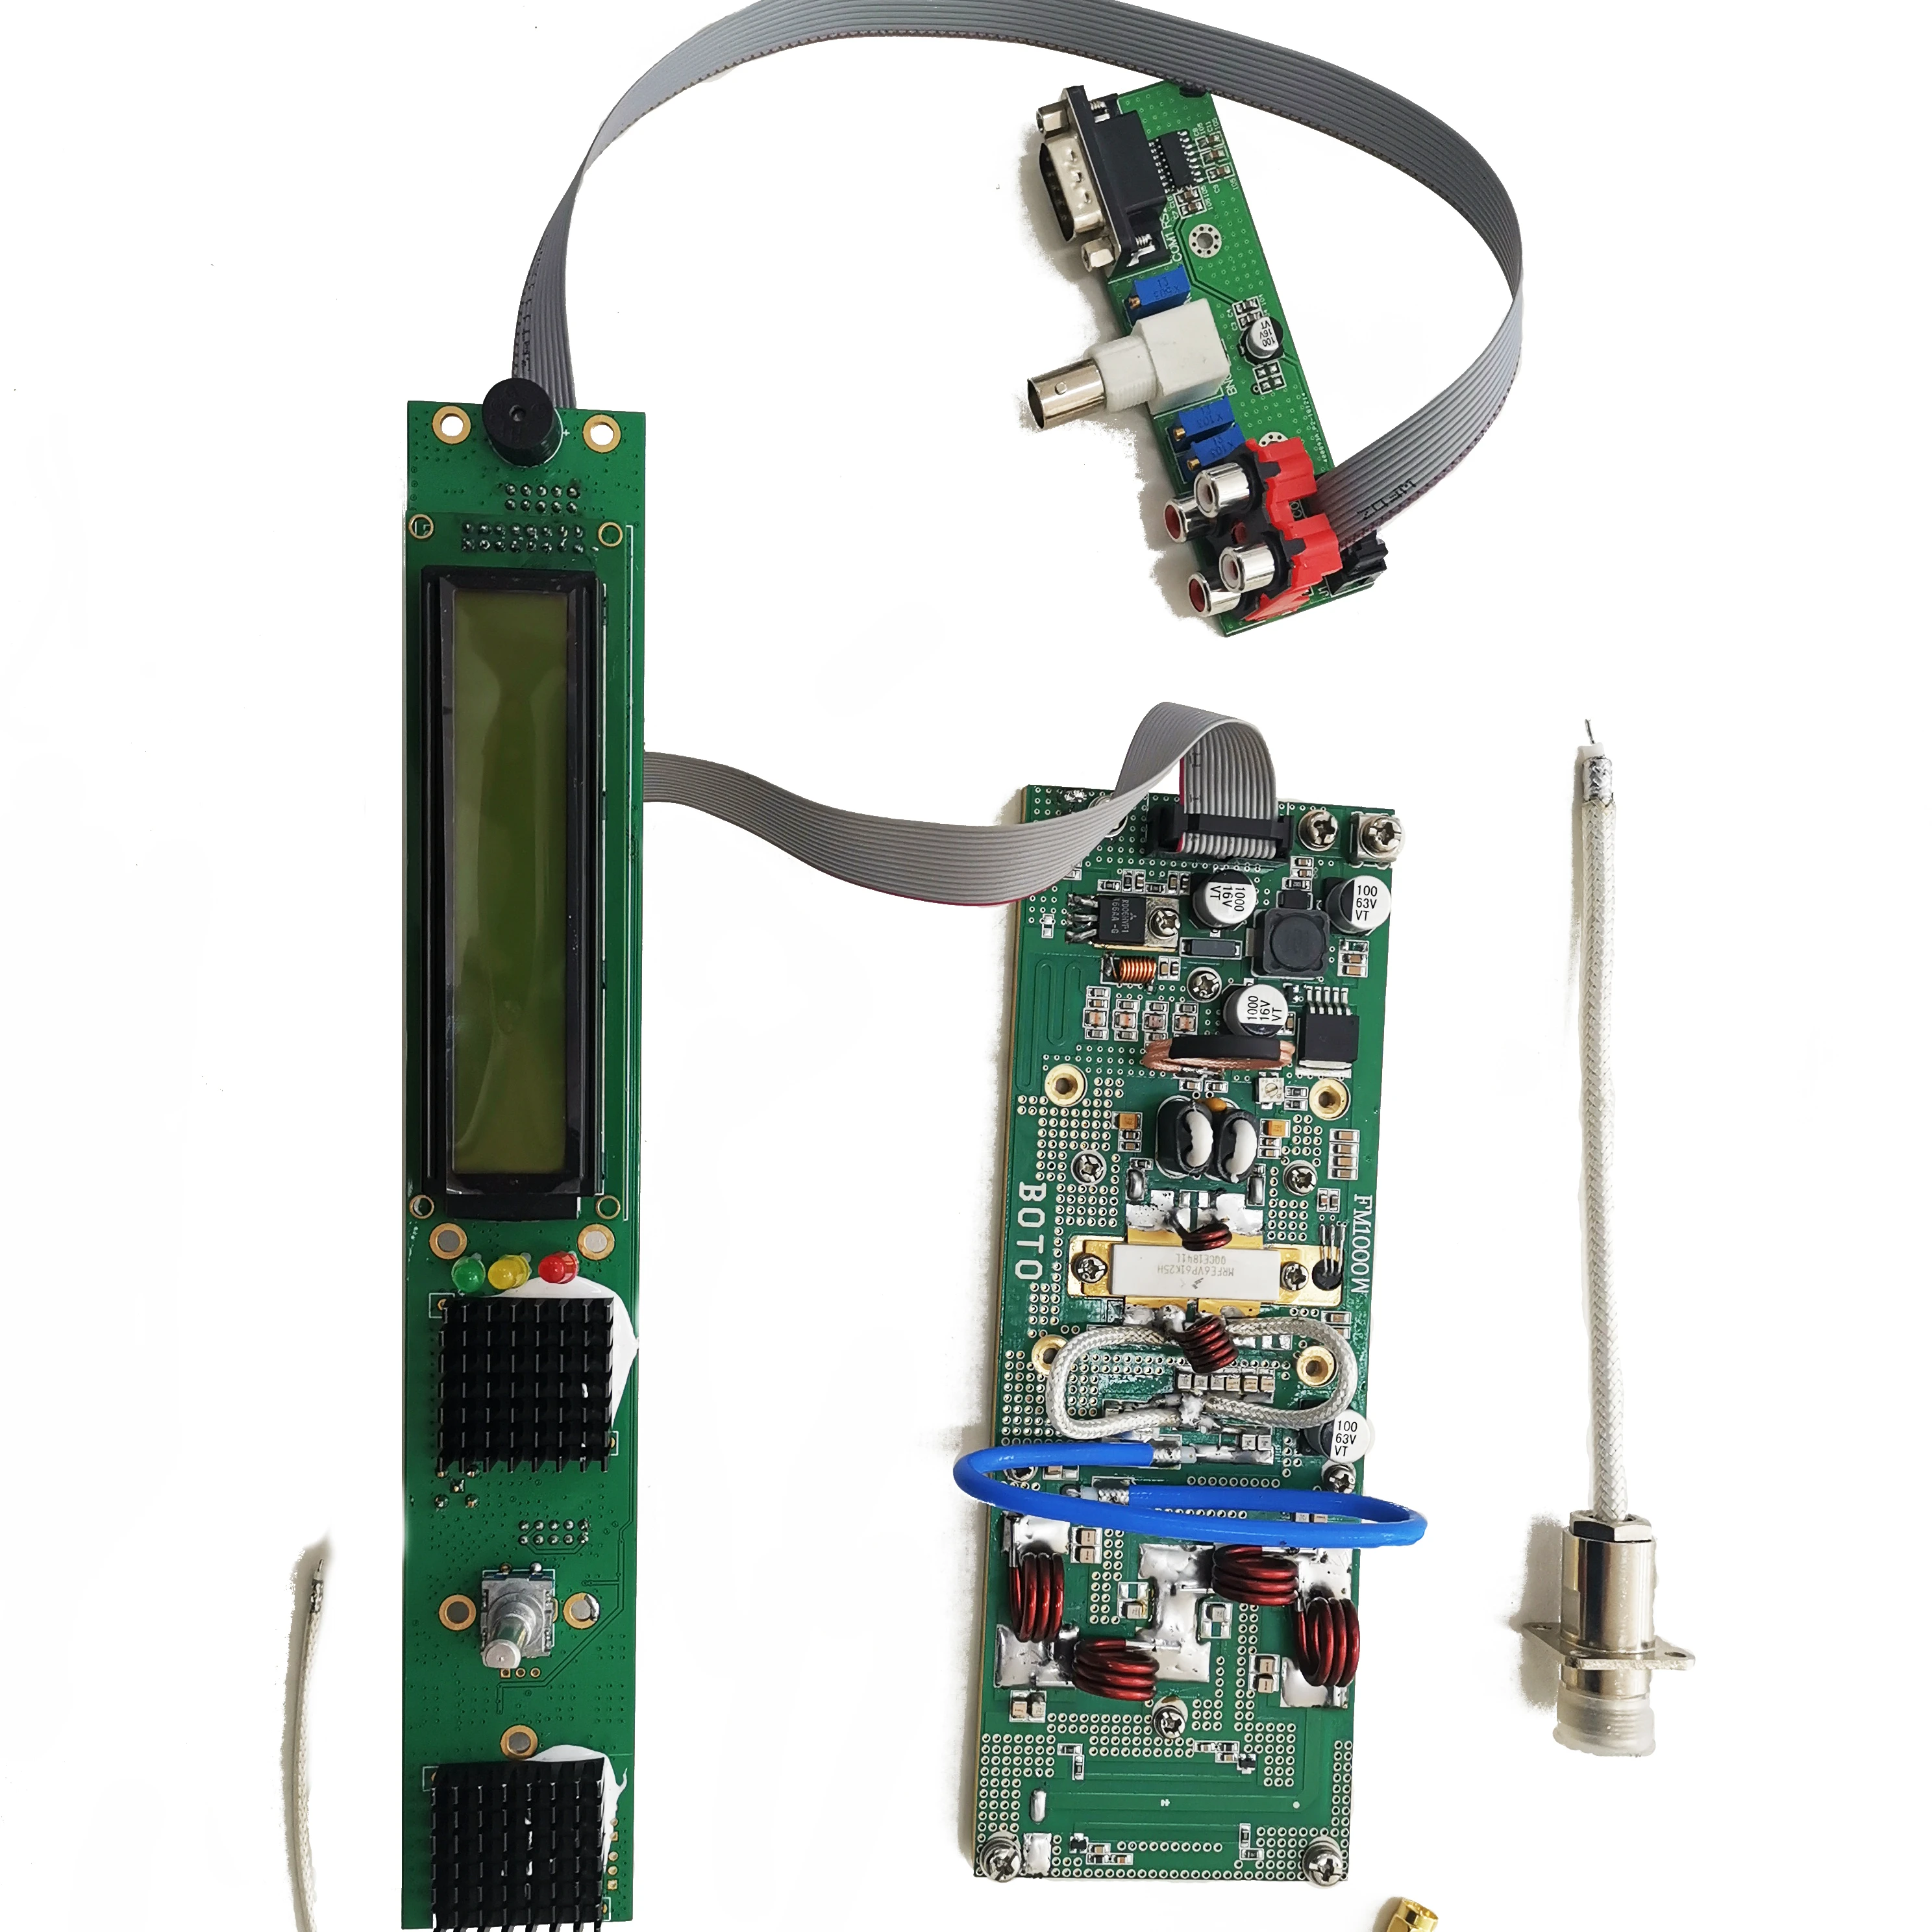 1kw FM Transmitter Stereo Kit enlarge